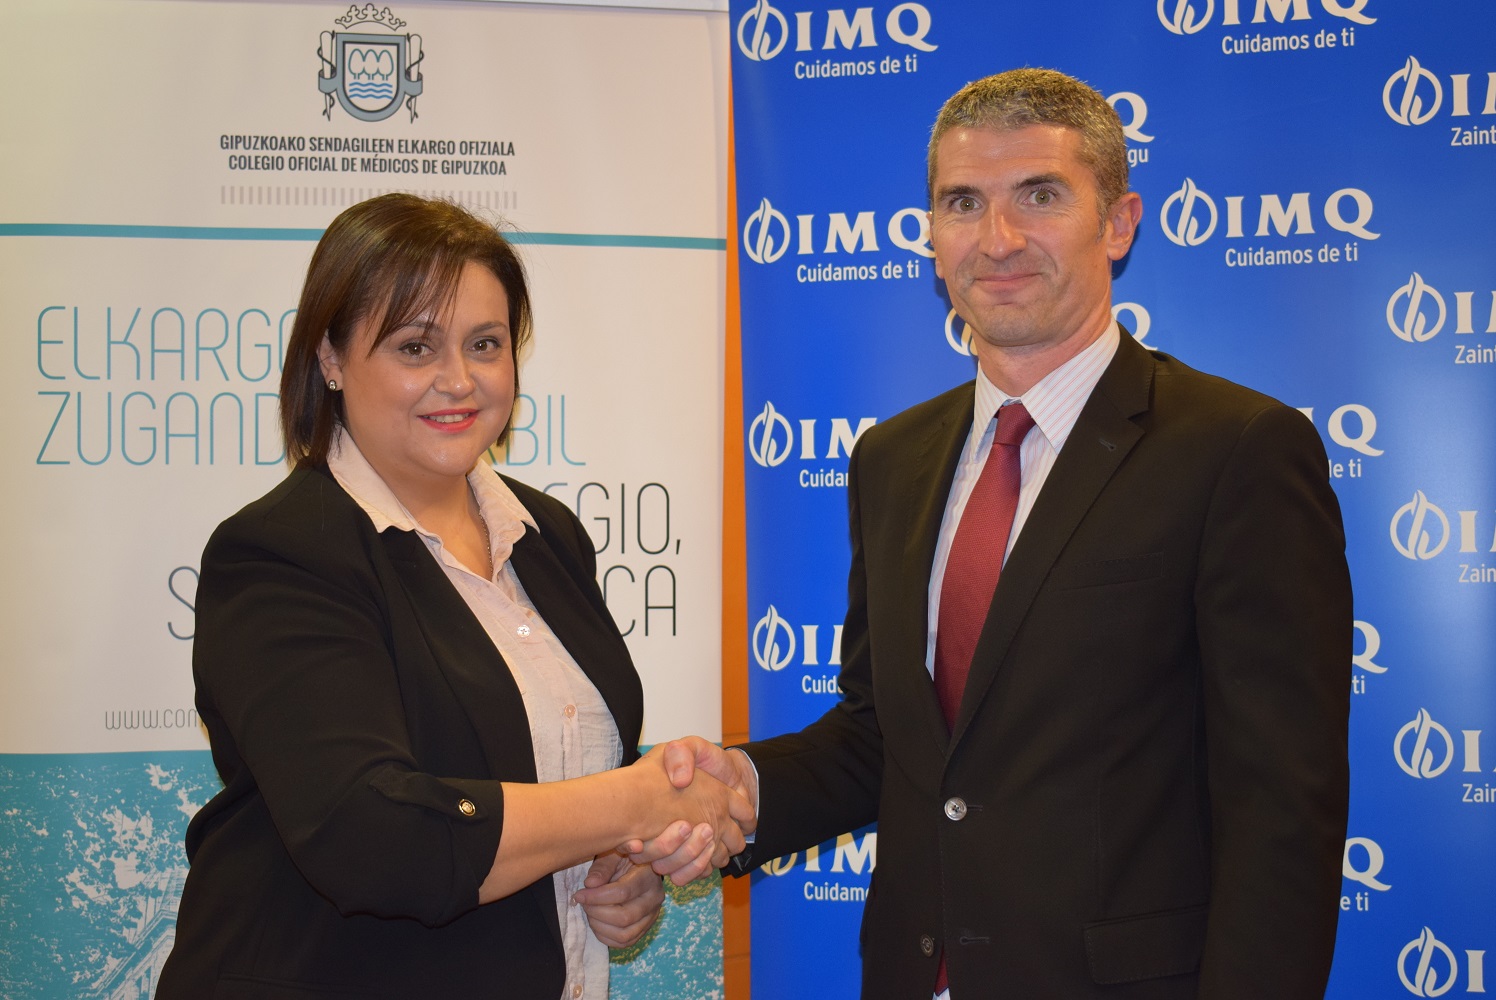 El Colegio de Médicos de Gipuzkoa renueva su acuerdo de colaboración con IMQ